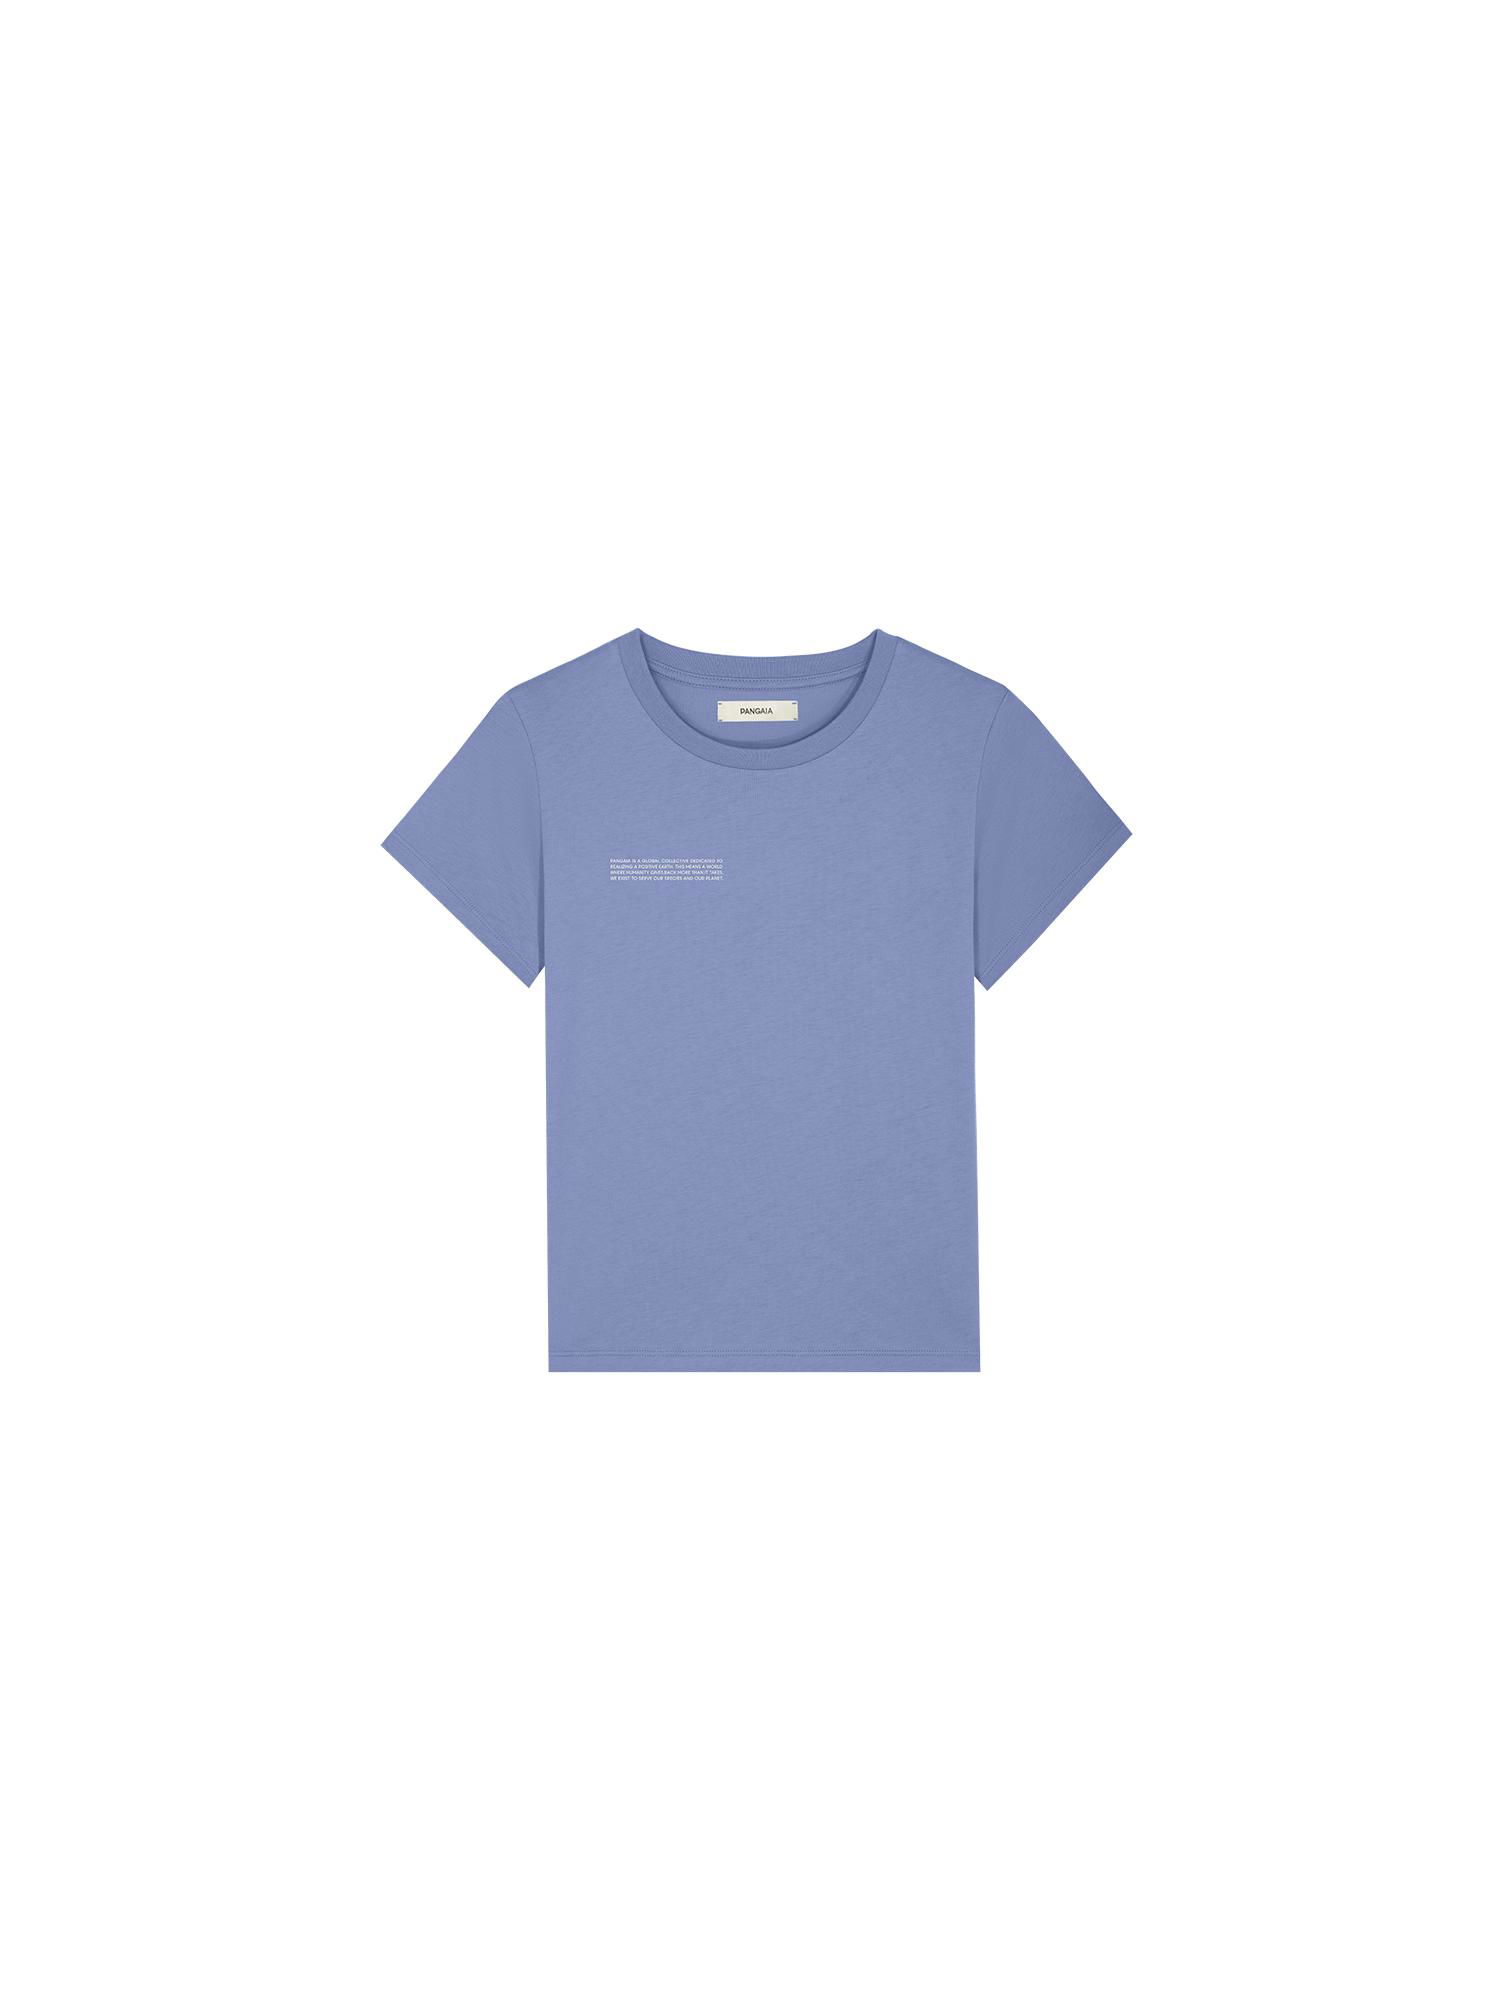 Kids' 365 Midweight T-Shirt—aster-purple by PANGAIA